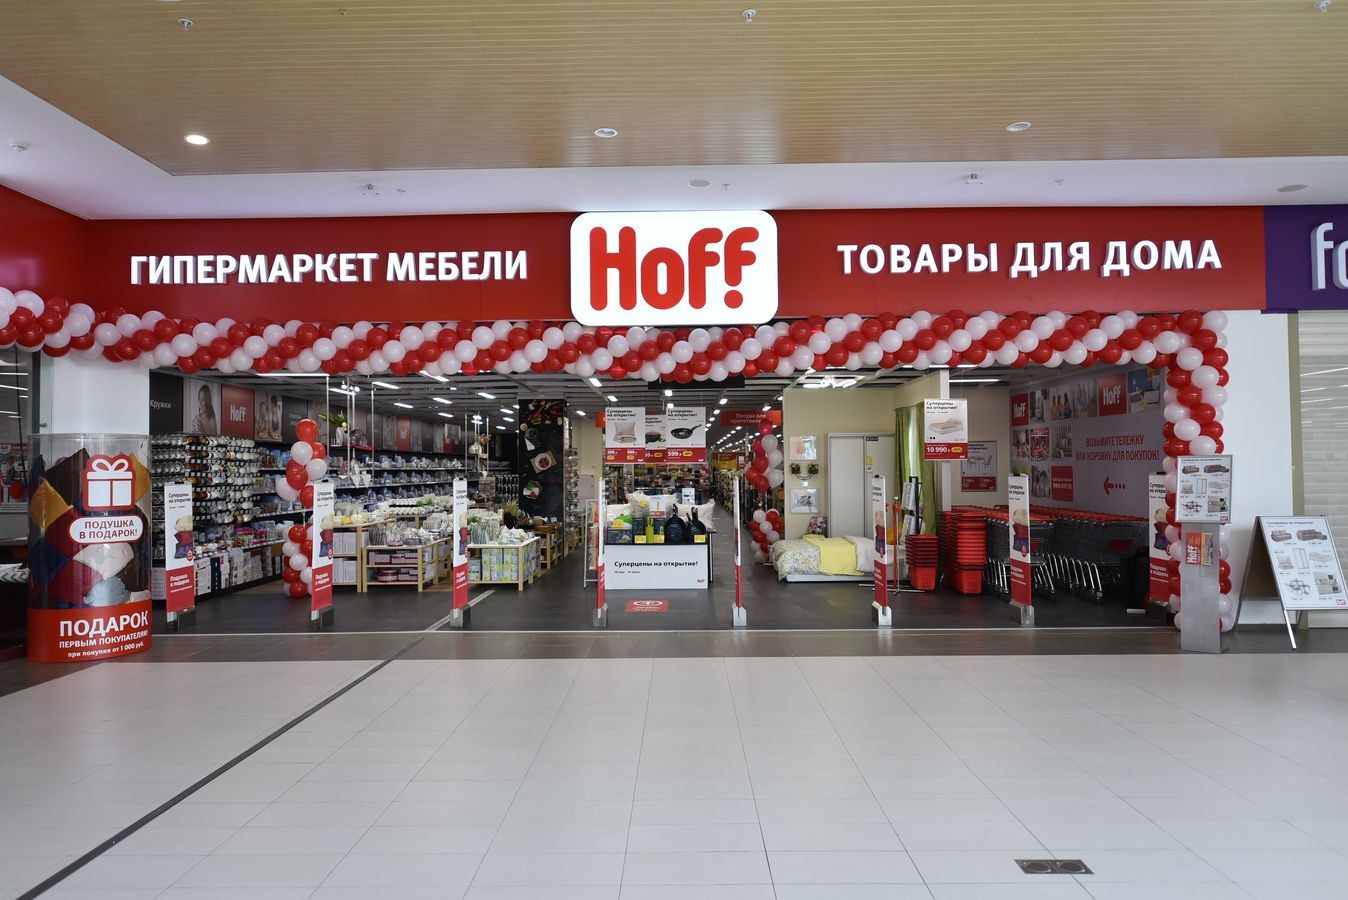 Гипермаркет товаров для дома hoff. Hoff магазин. Магазин Hoff в Волгограде. Хофф акварель Волгоград. Гипермаркет с мебелью и товарами для дома.